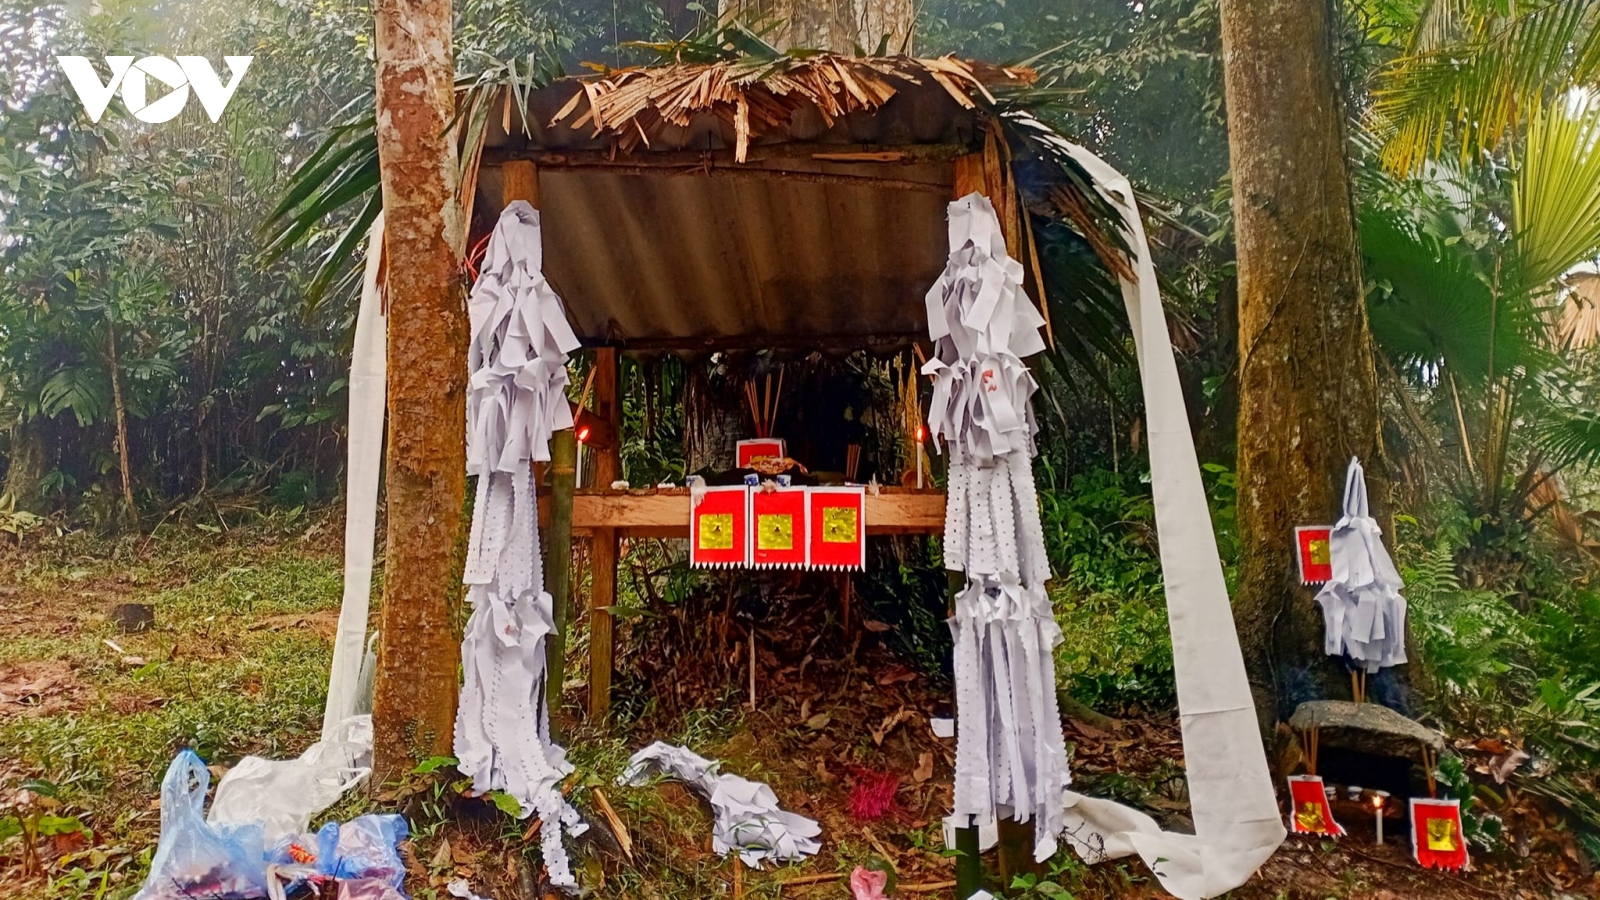 Độc đáo nghi thức "Tết rừng" ở Yên Bái